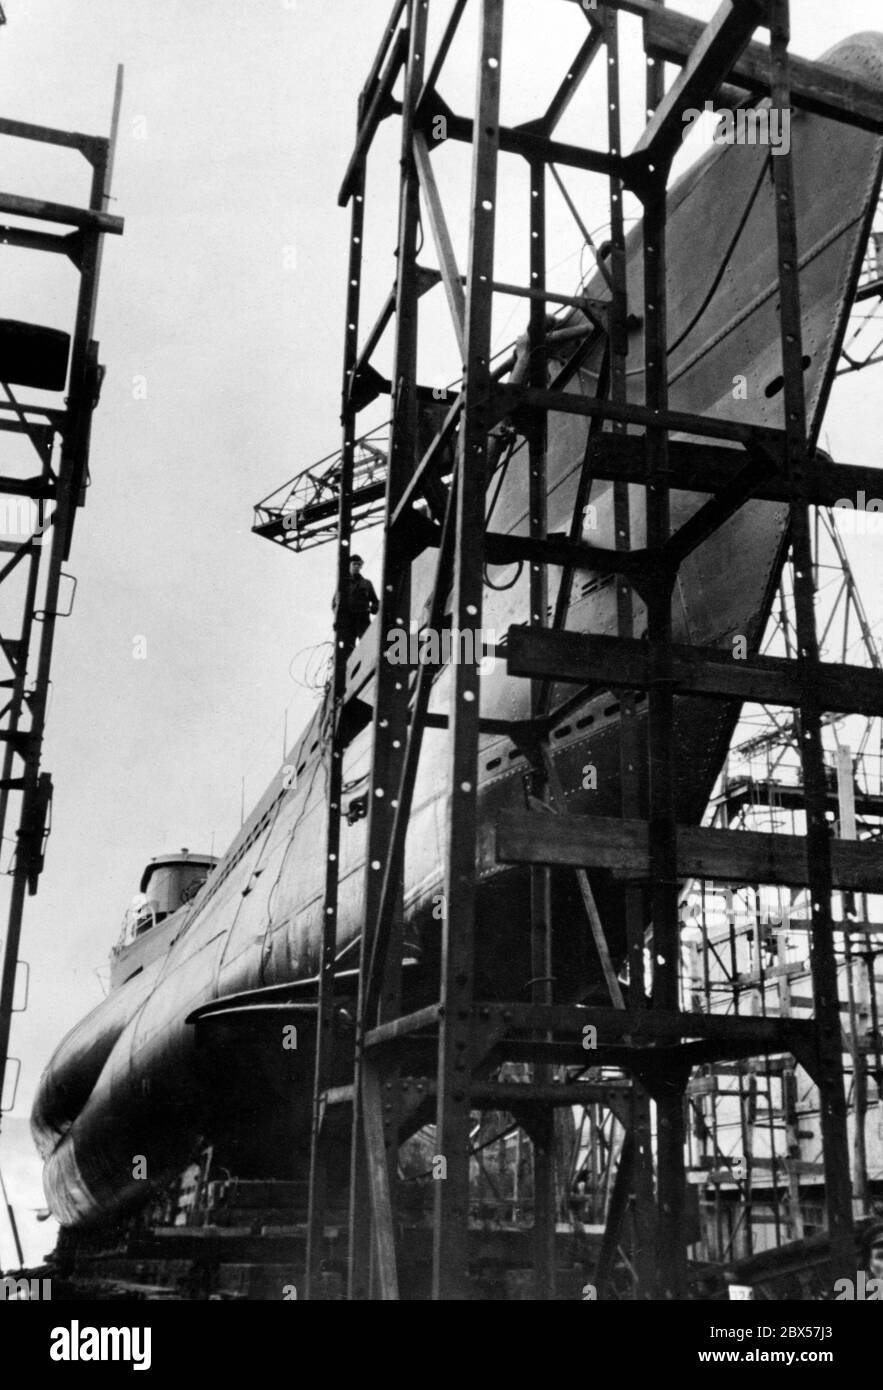 Un sous-marin de classe VII est terminé sur la cale, prêt pour le lancement. C'est le sous-marin le plus produit de l'histoire. Banque D'Images